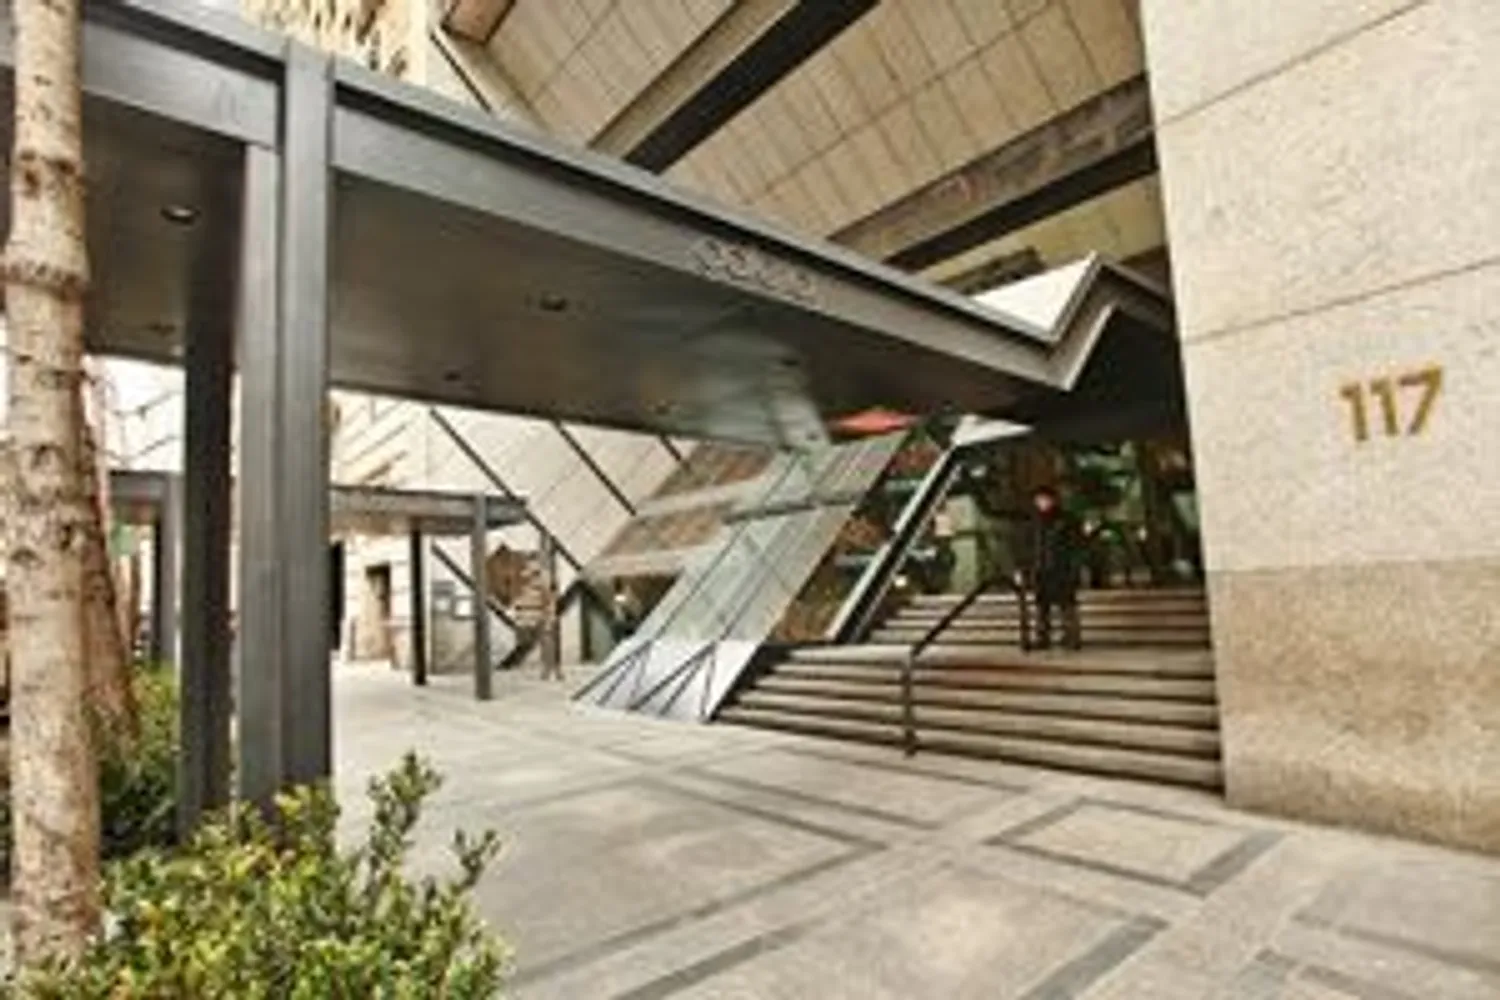 The Galleria Entrance on “Billionaire’s Row"